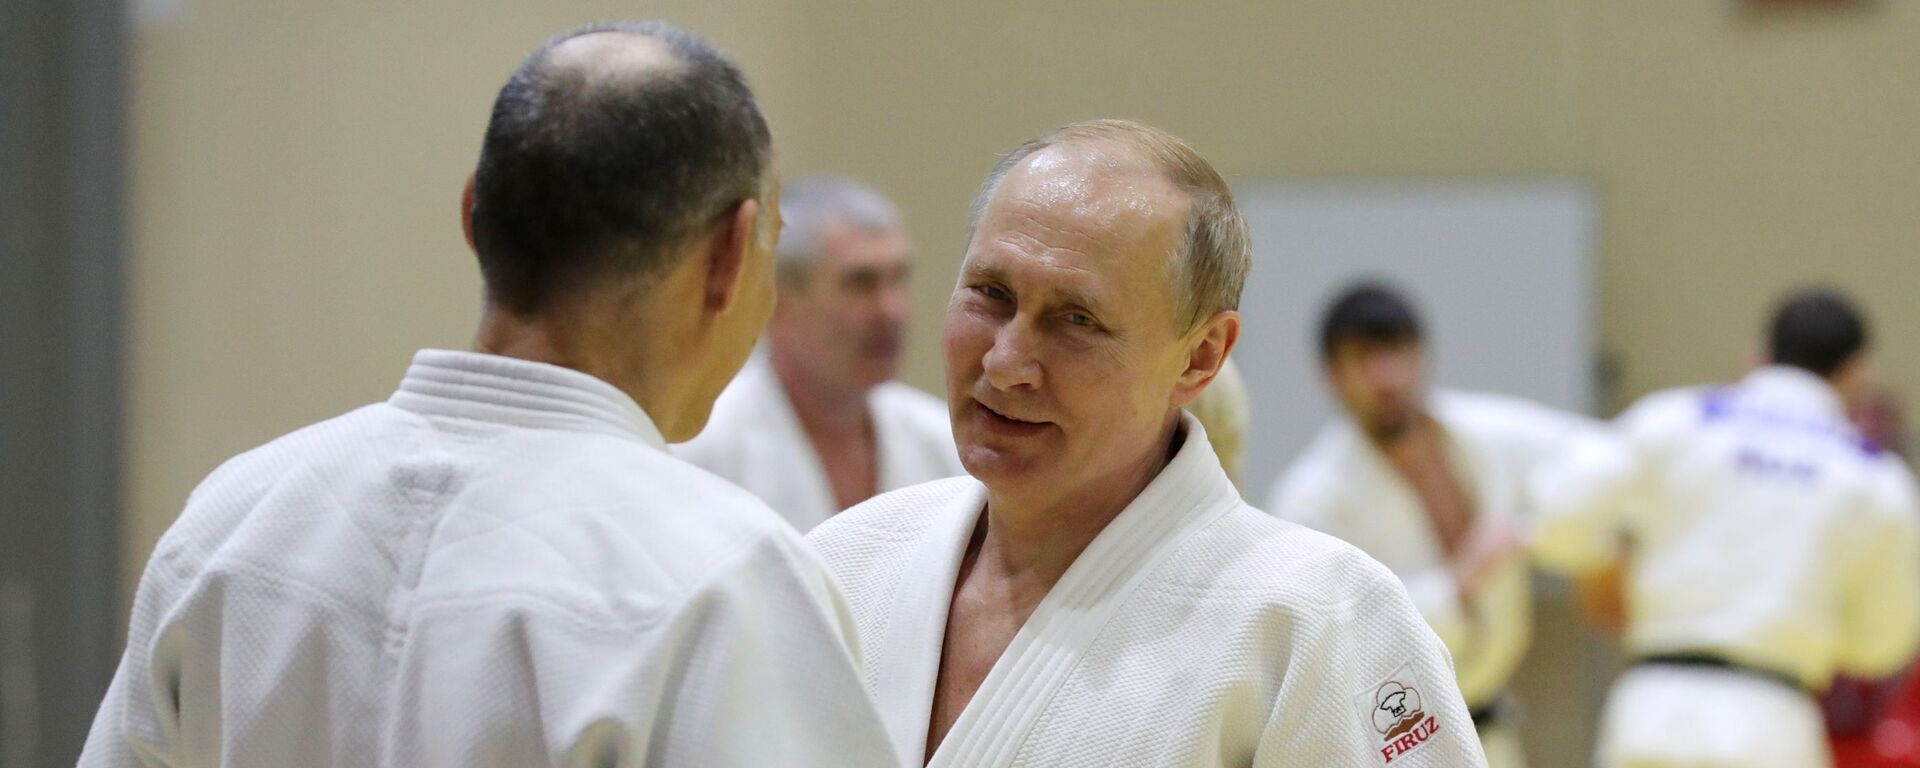 Tổng thống Nga Vladimir Putin trong buổi tập với các thành viên đội tuyển judo quốc gia Nga - Sputnik Việt Nam, 1920, 24.02.2020